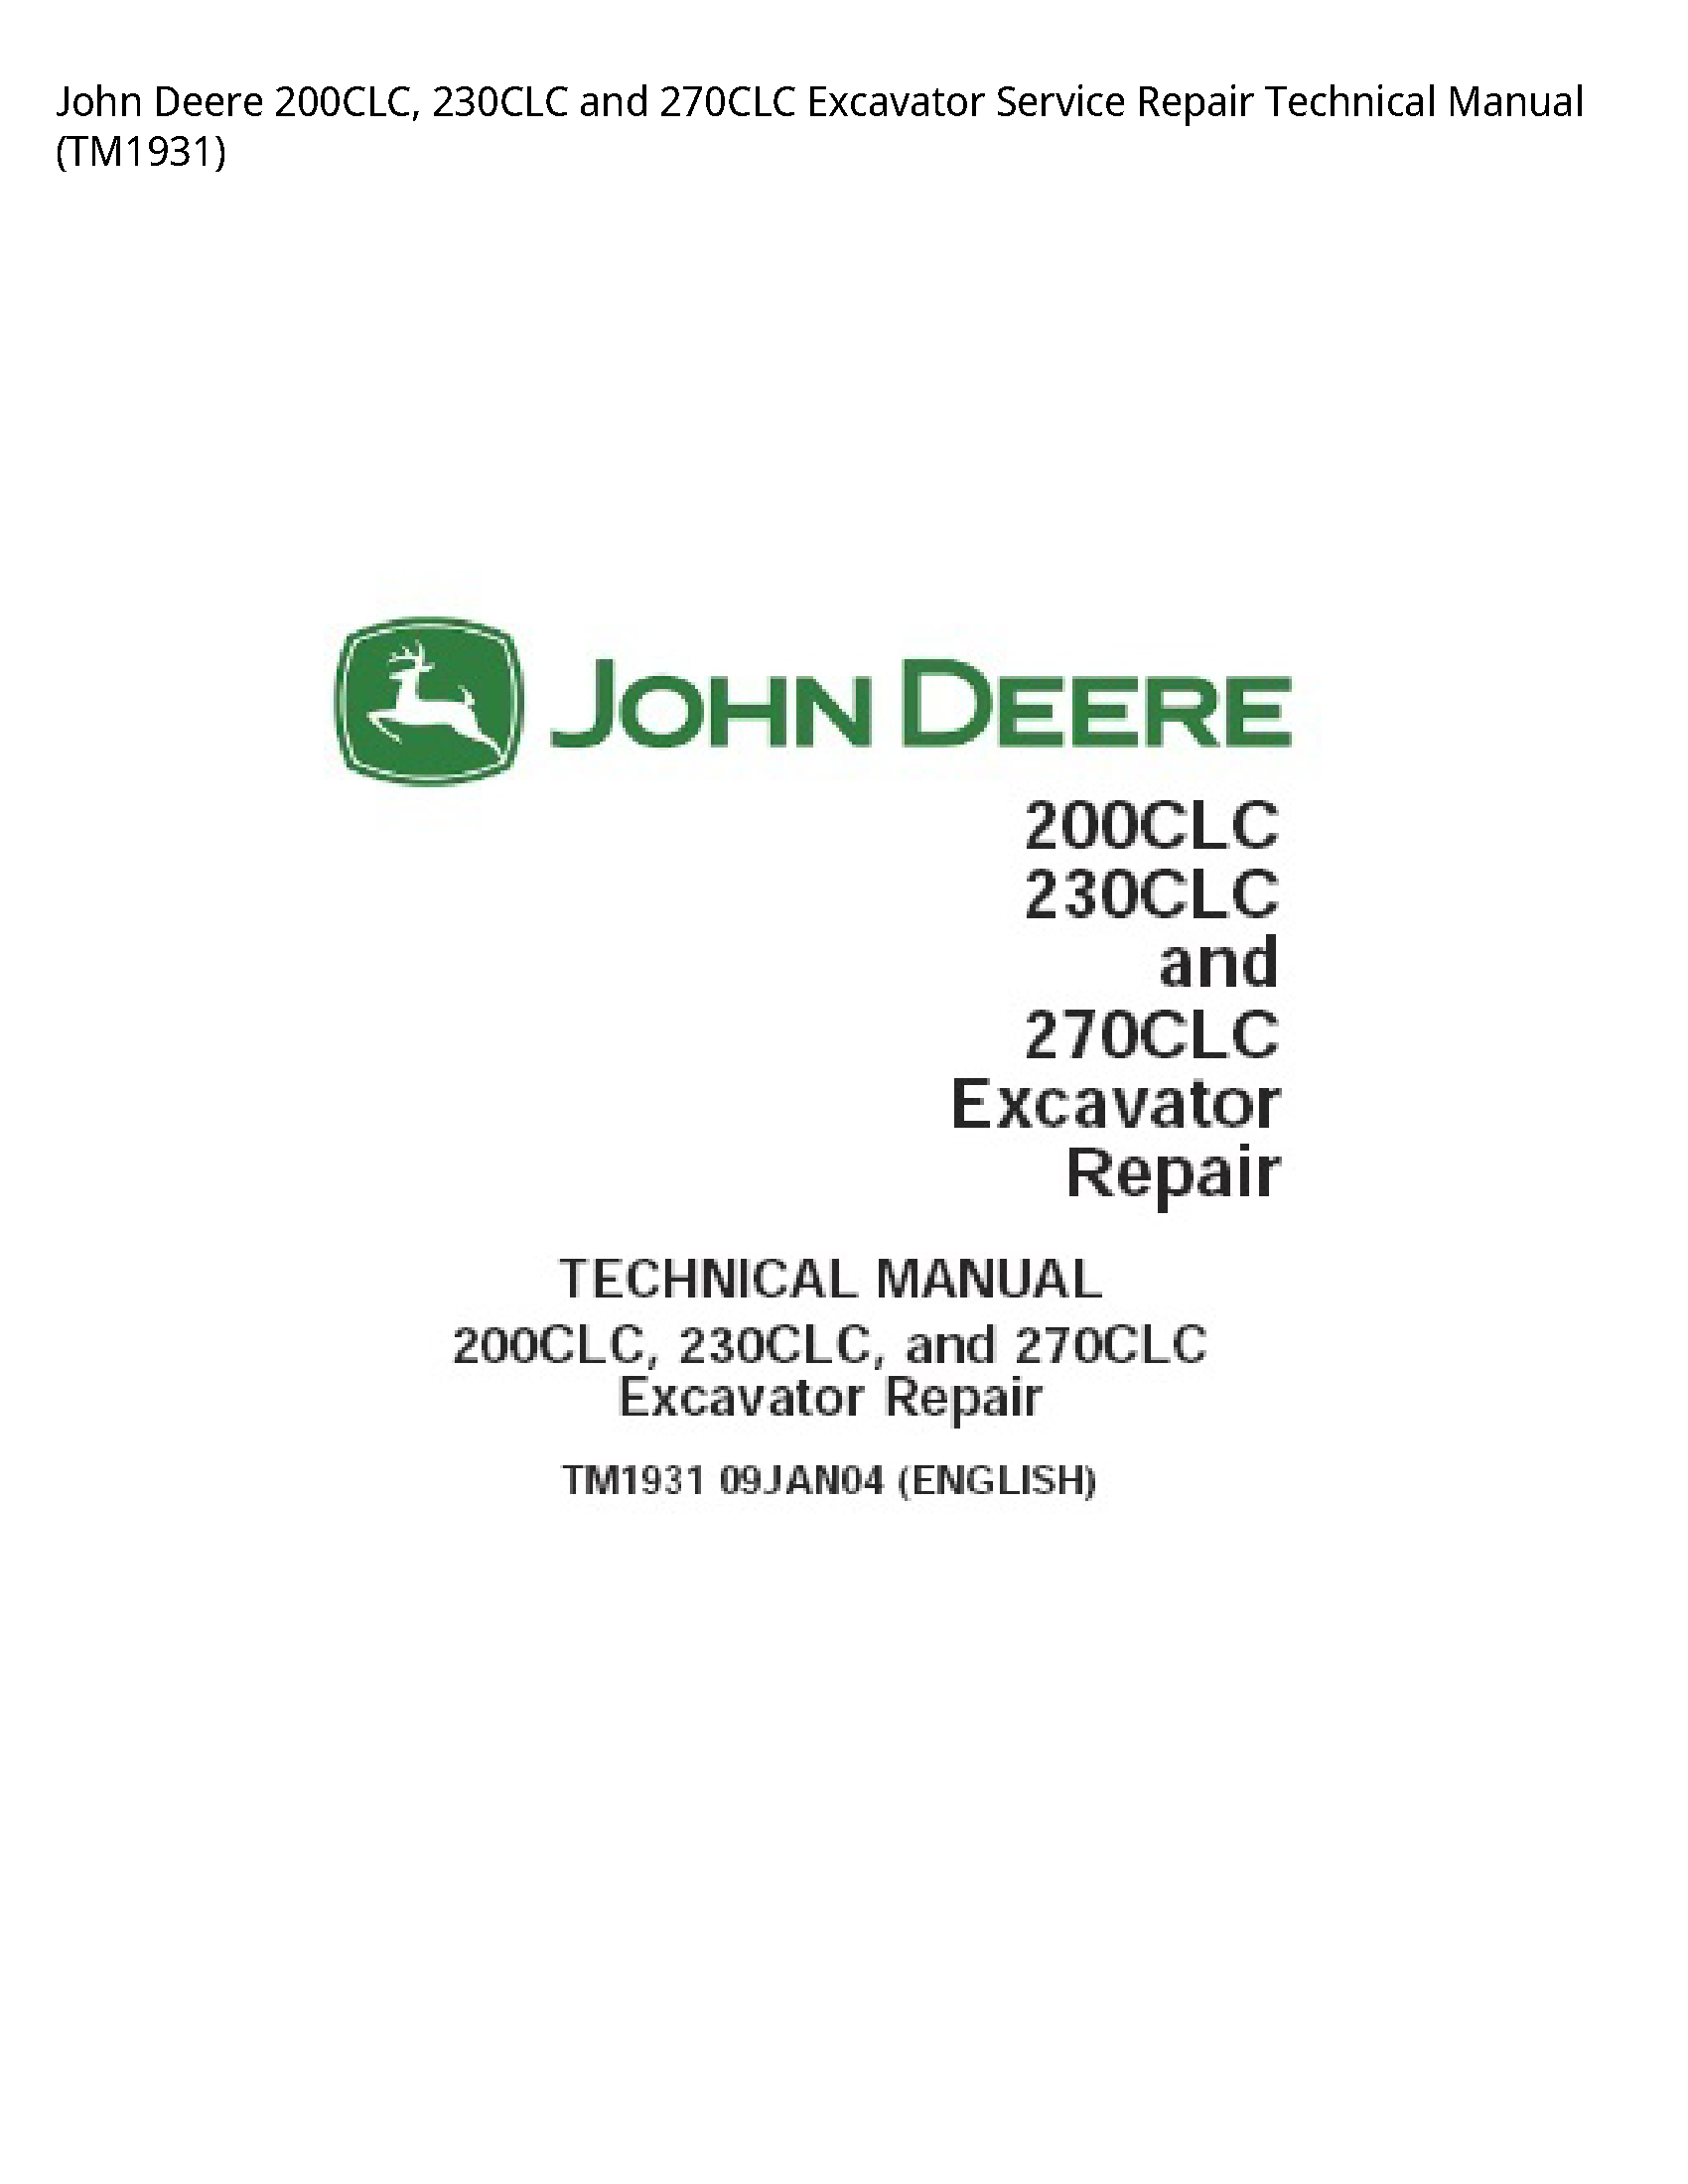 John Deere 200CLC  Excavator manual